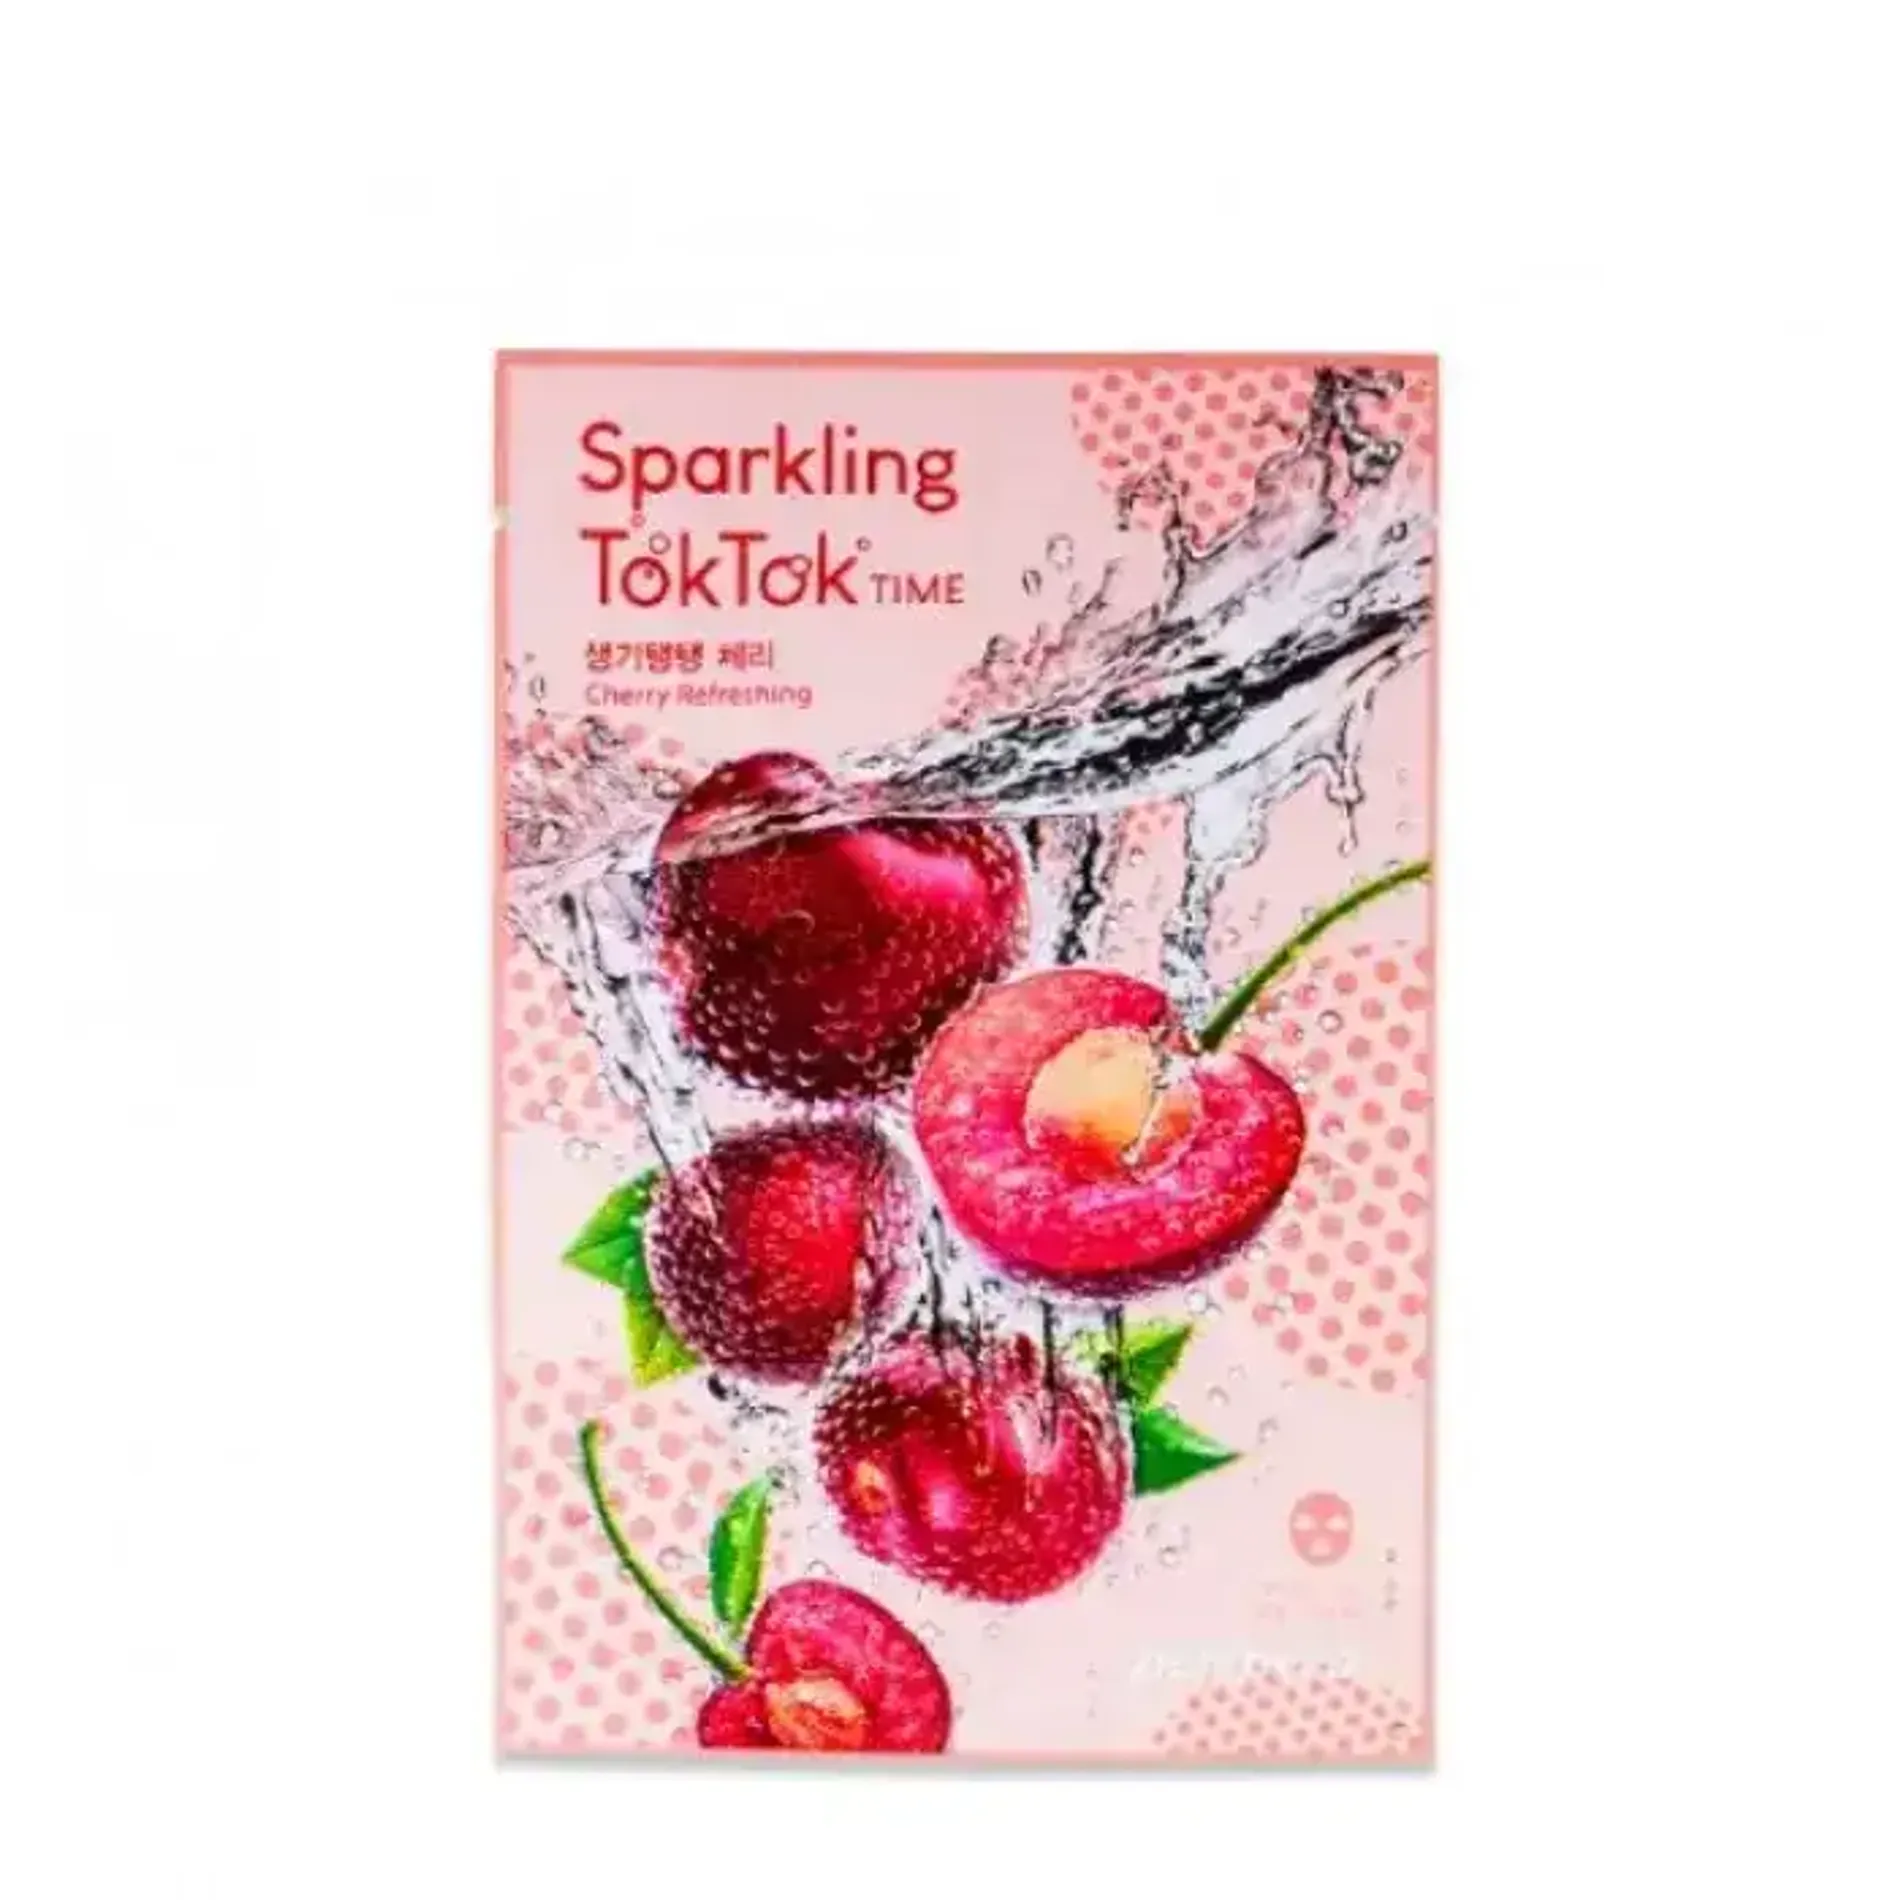 mat-na-giay-peripera-sparkling-toktok-time-mask-sheet-18g-3-cherry-refreshing-1